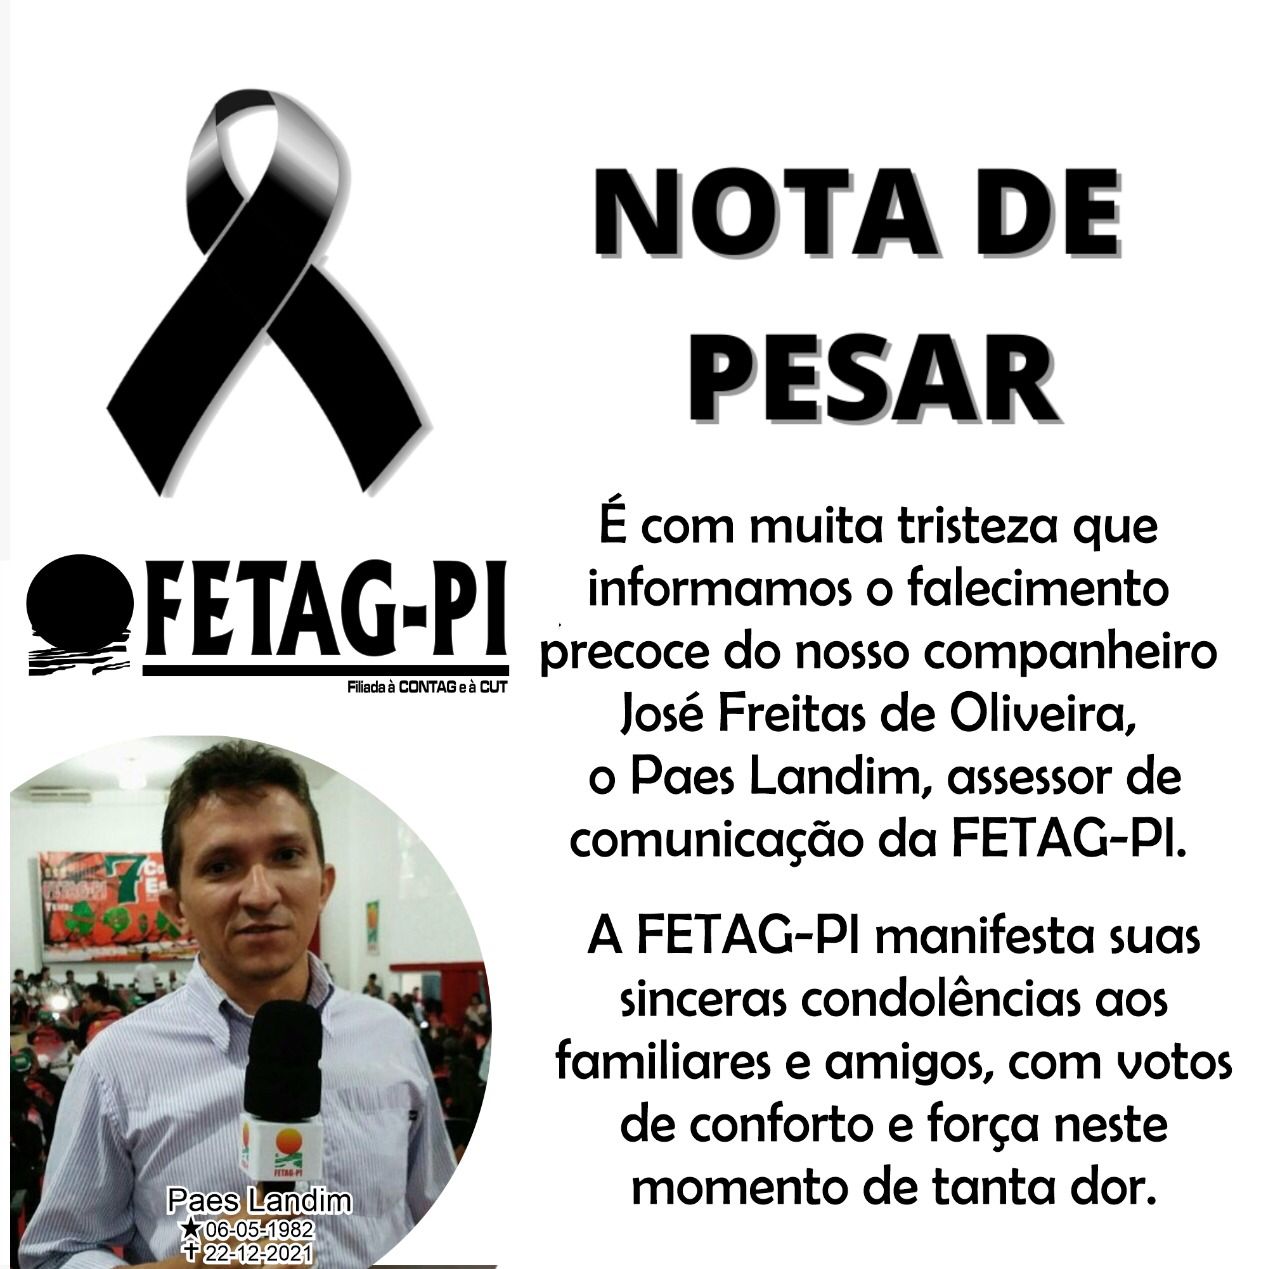 Morre jornalista Paes Landim vítima de infarto fulminante em Teresina (Foto: Divulgação/ FETAG)